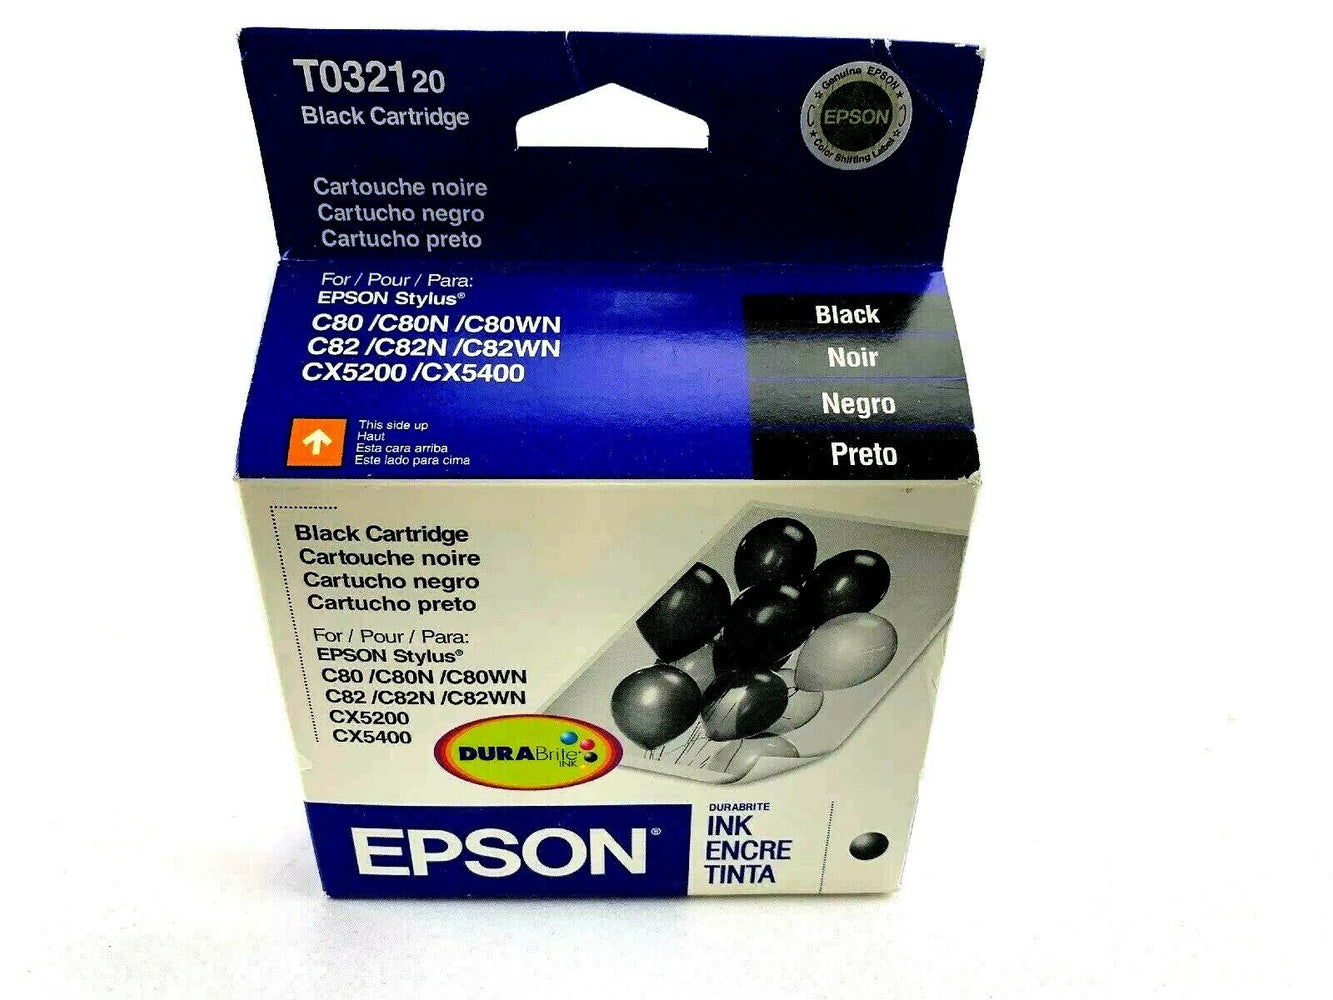 Epson T0321 Black Ink Cartridge for C80/C80N/C80WN/C82/C82N/C82WN/CX5200/CX5400